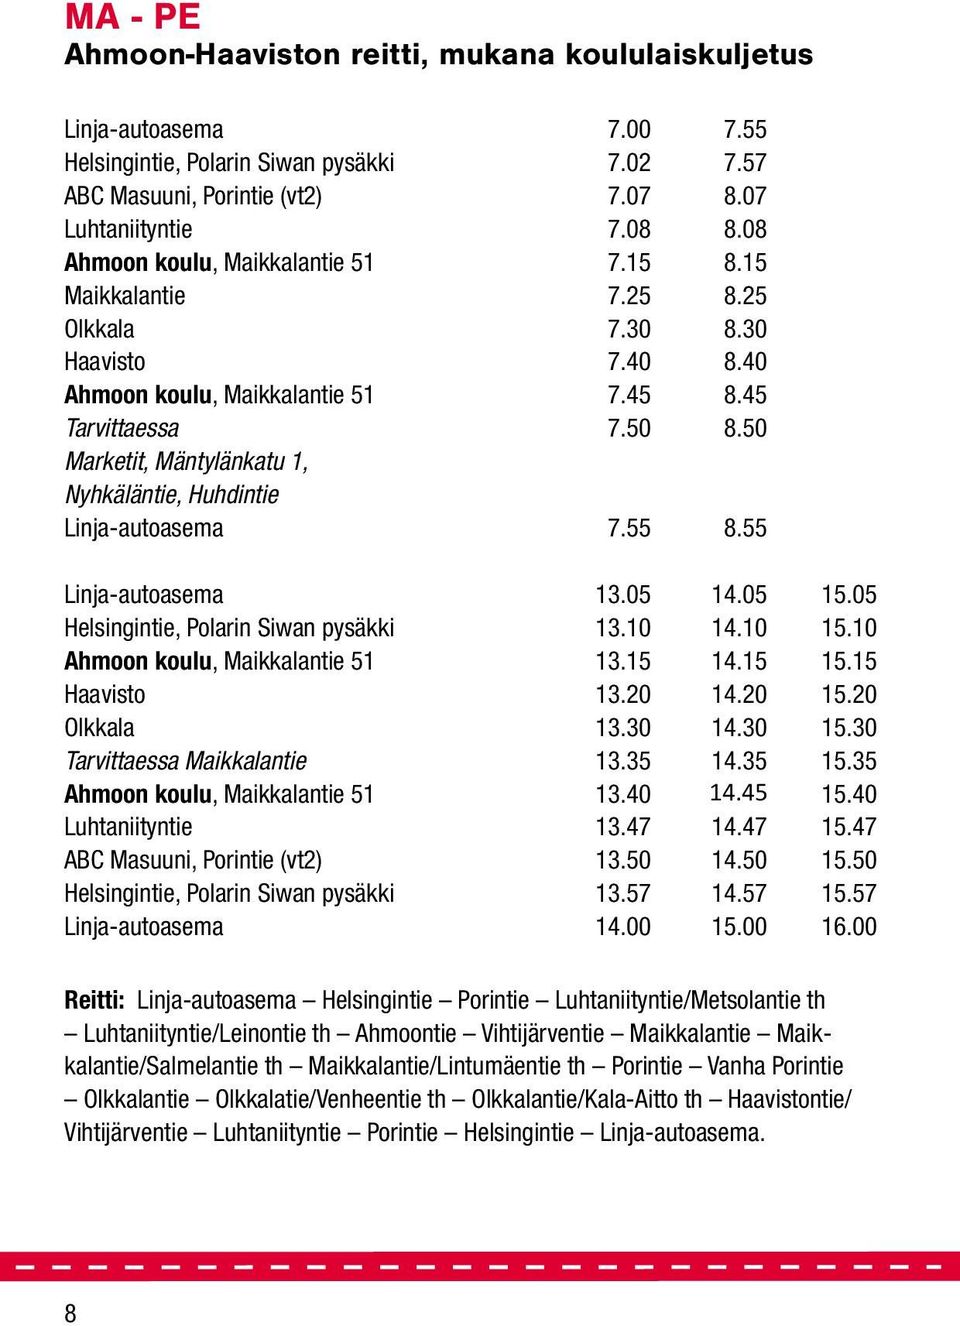 50 Marketit, Mäntylänkatu 1, Nyhkäläntie, Huhdintie Linja-autoasema 7.55 8.55 Linja-autoasema 13.05 14.05 15.05 Helsingintie, Polarin Siwan pysäkki 13.10 14.10 15.10 Ahmoon koulu, Maikkalantie 51 13.